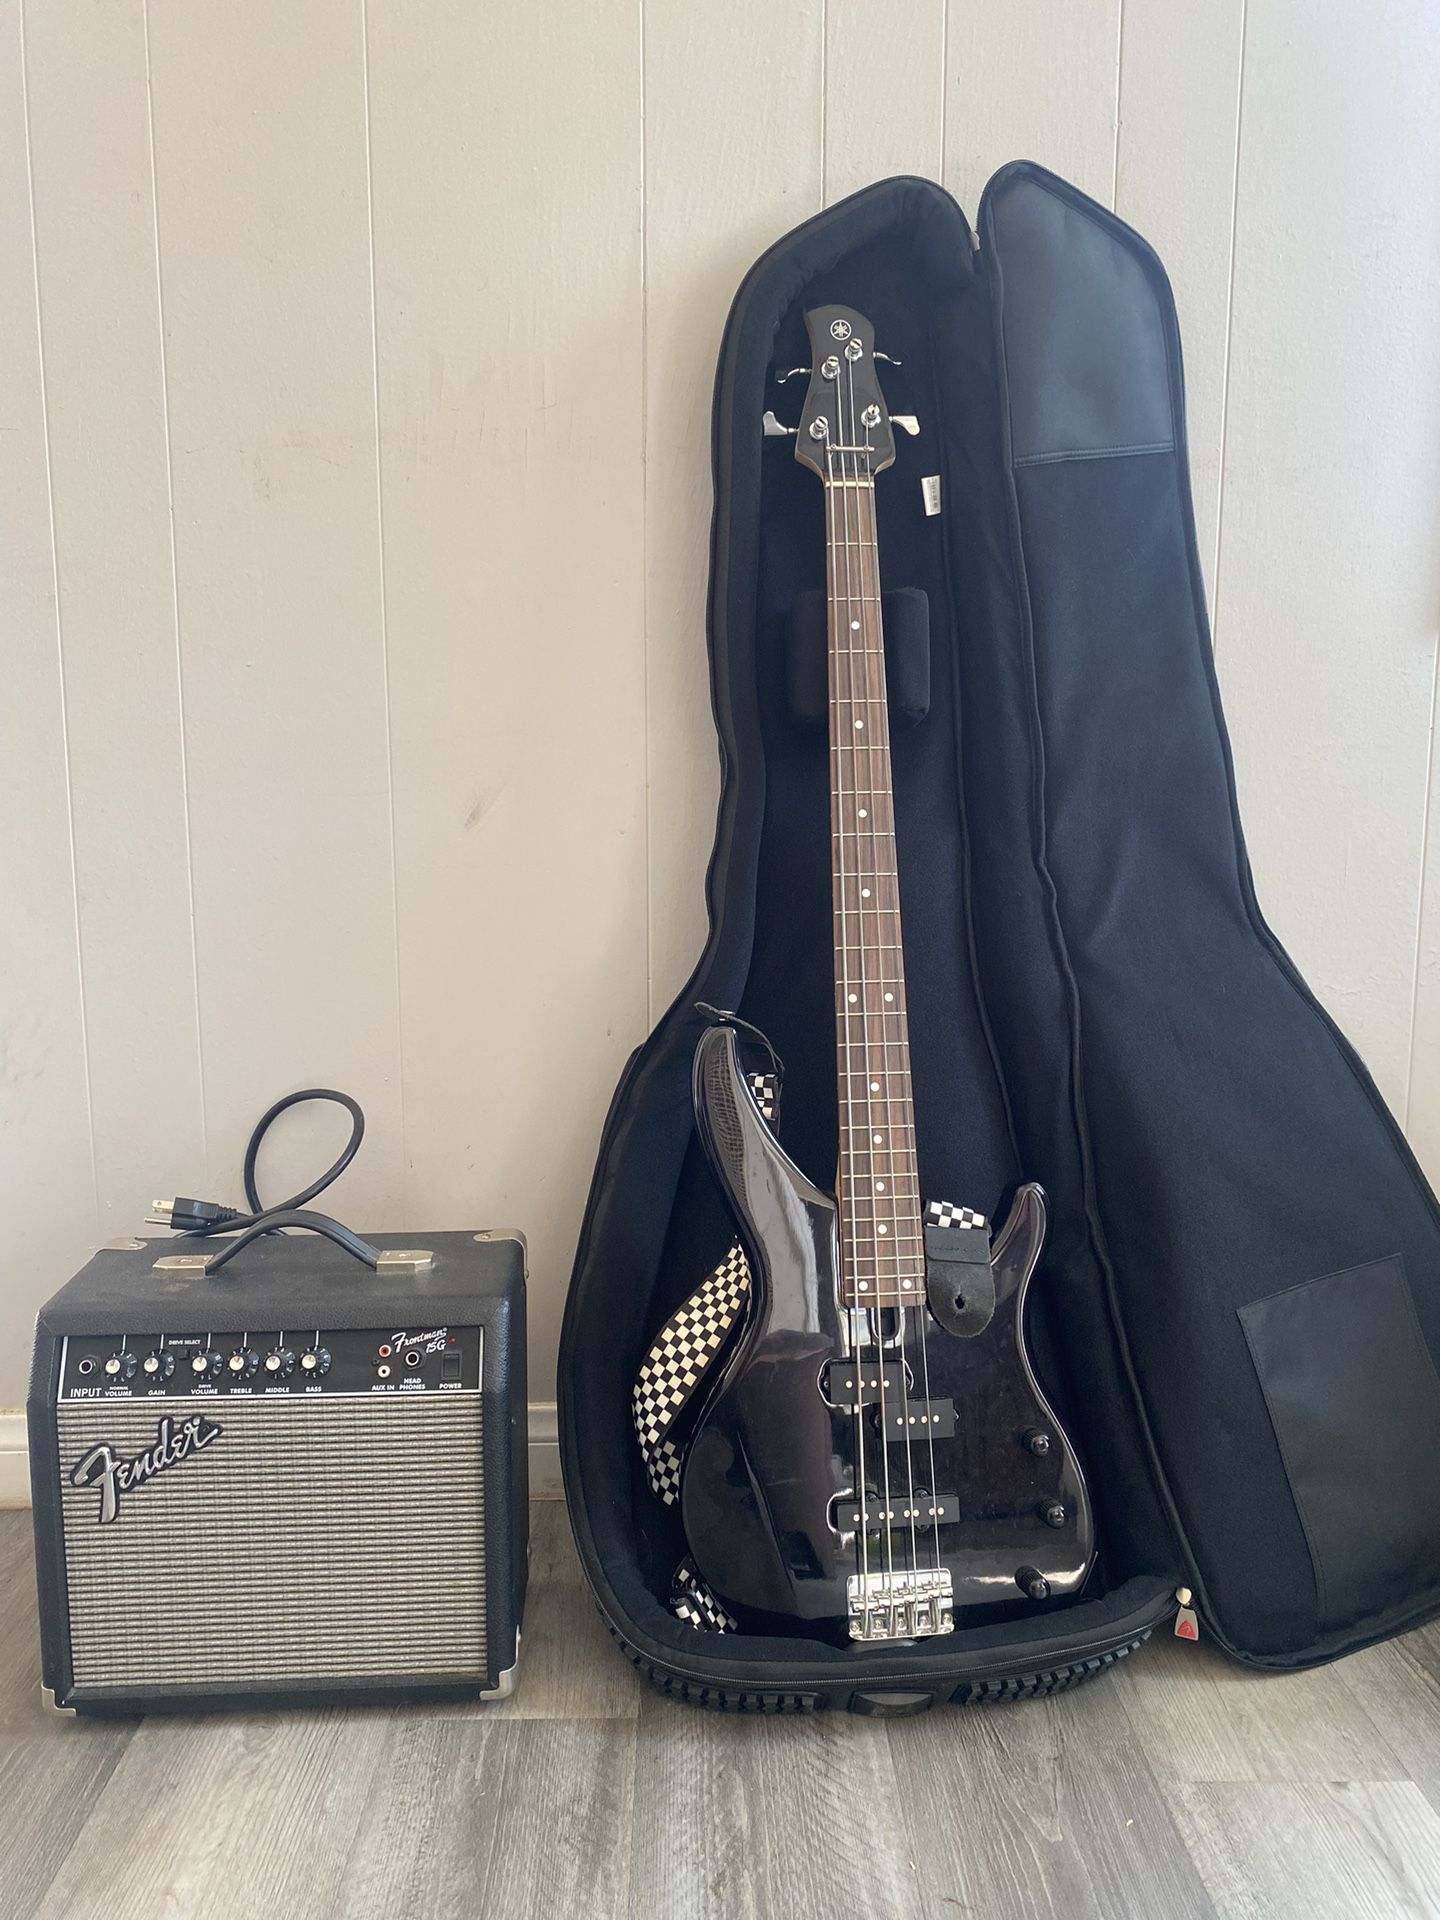 Yamaha Bass Guitar + Case + More